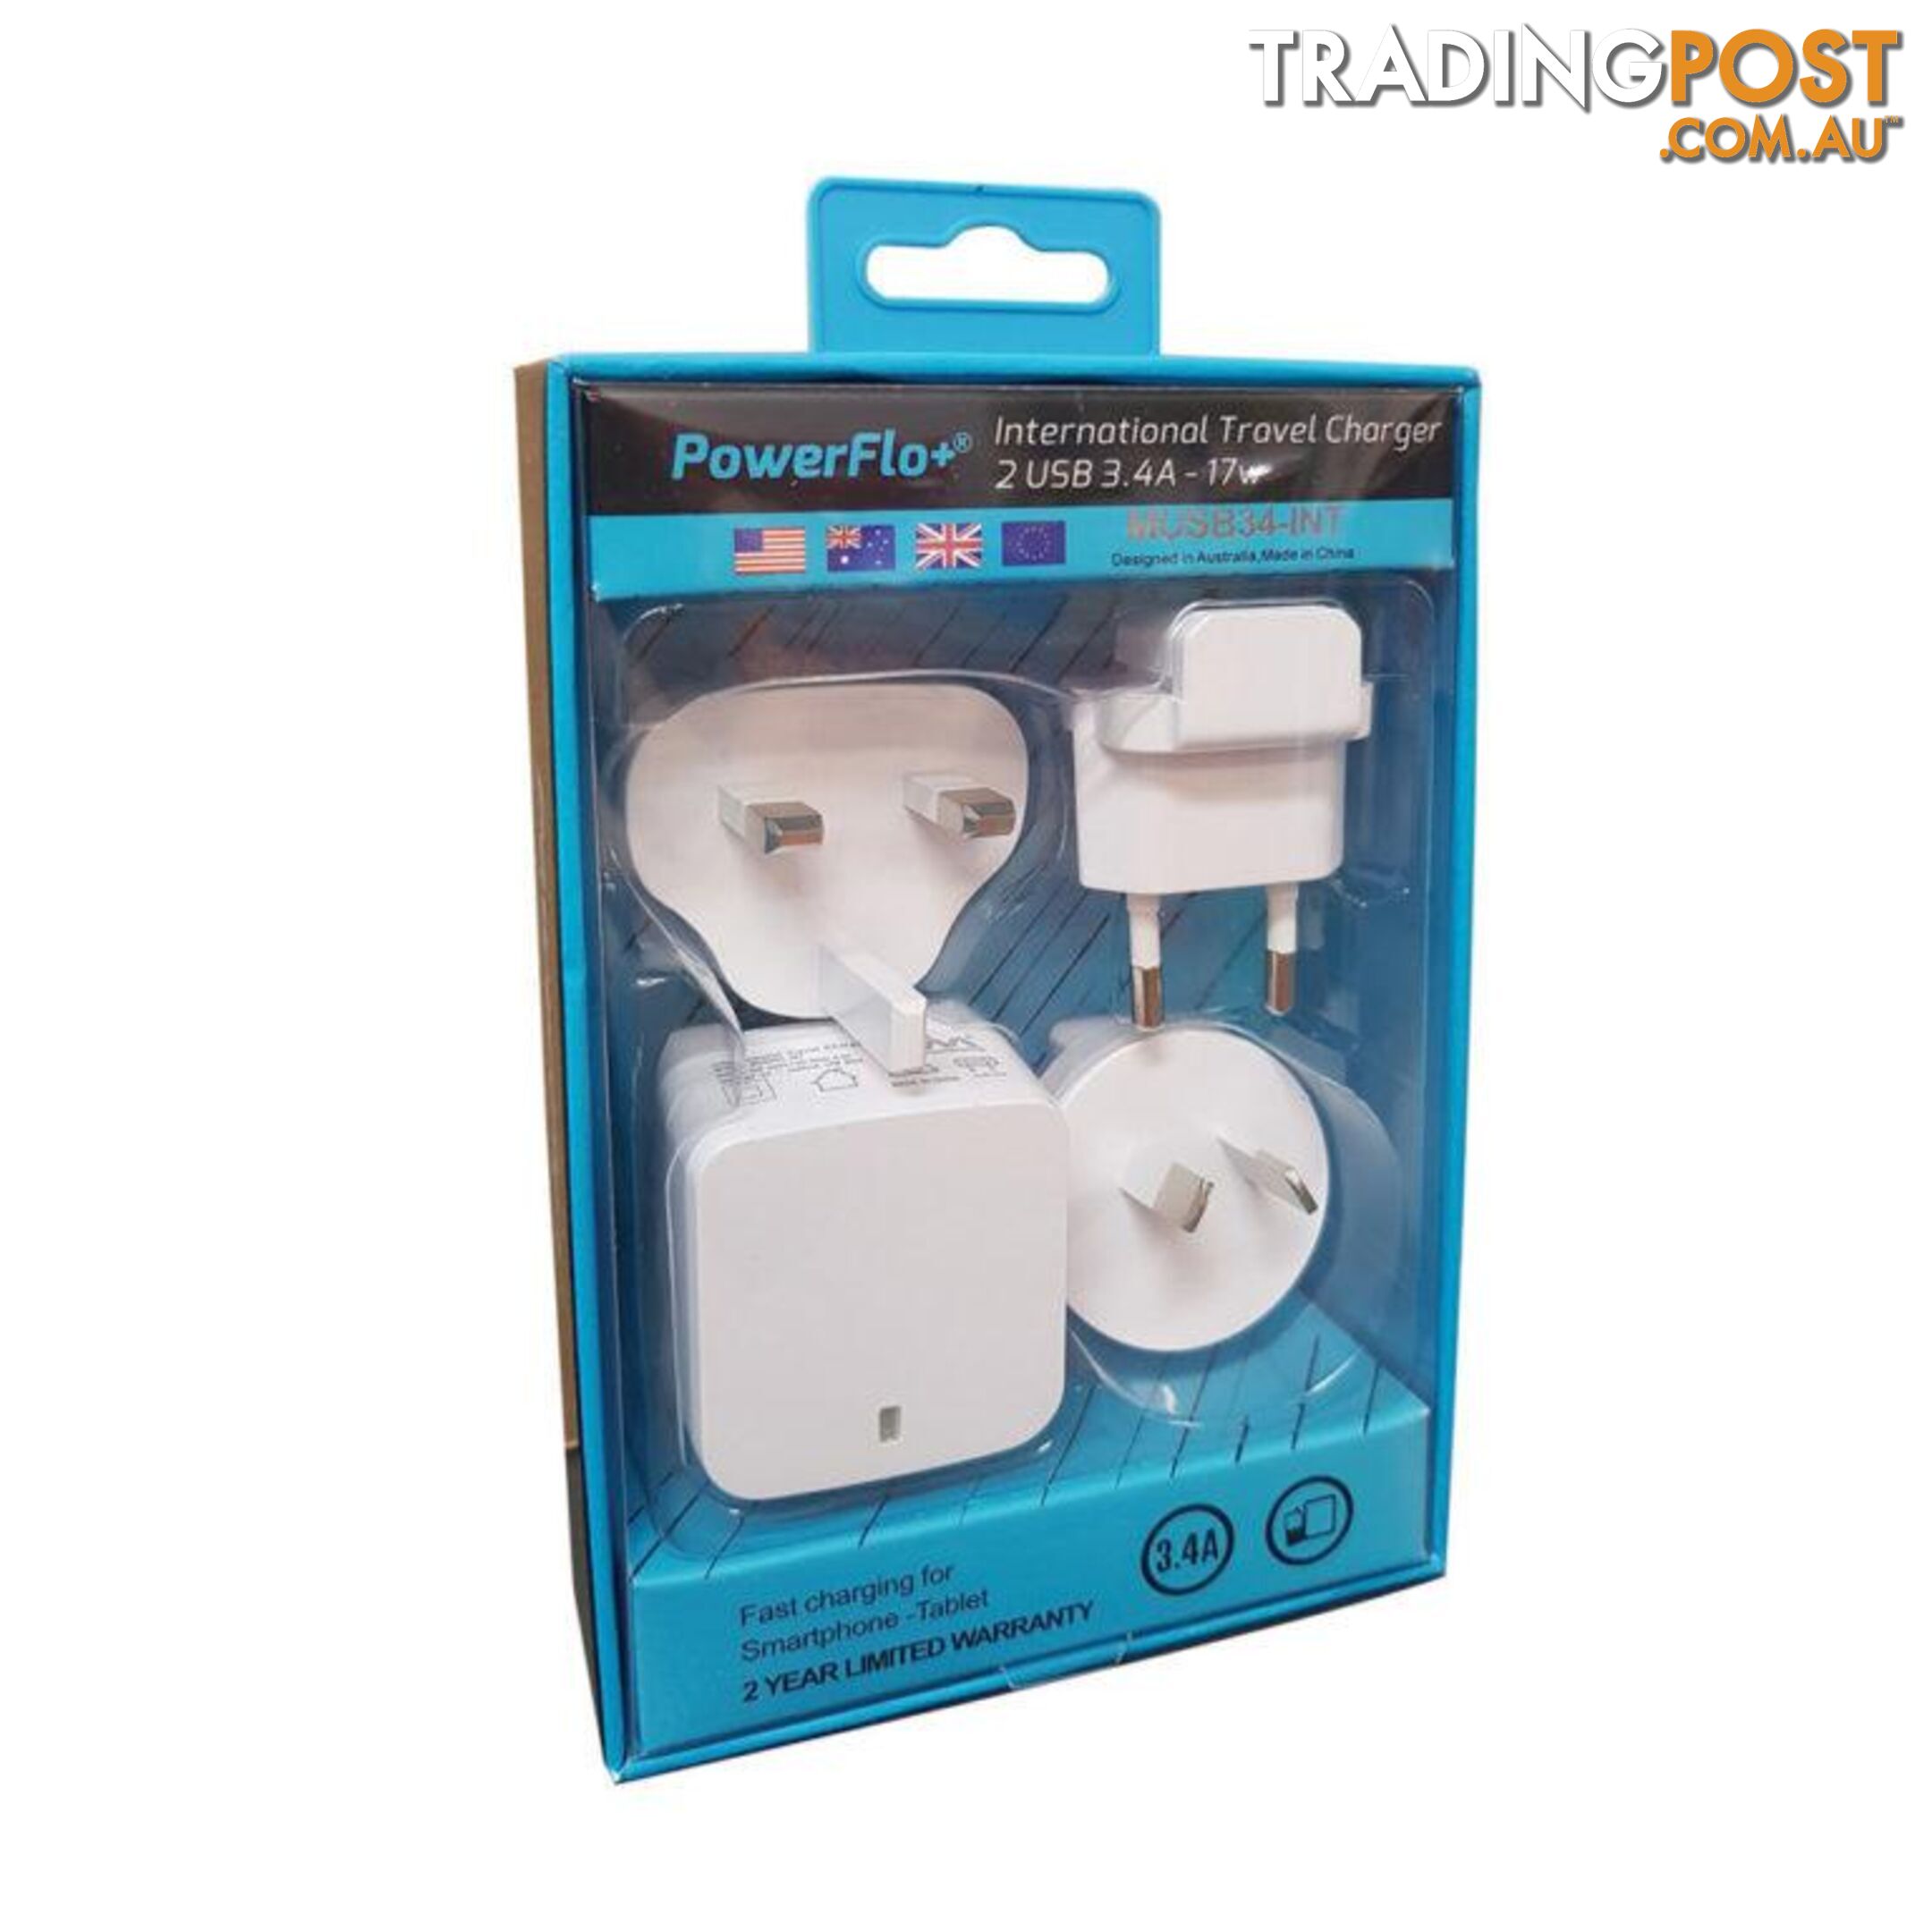 Powerflo+ International Travel Pack - 1001052 - Charging & Power